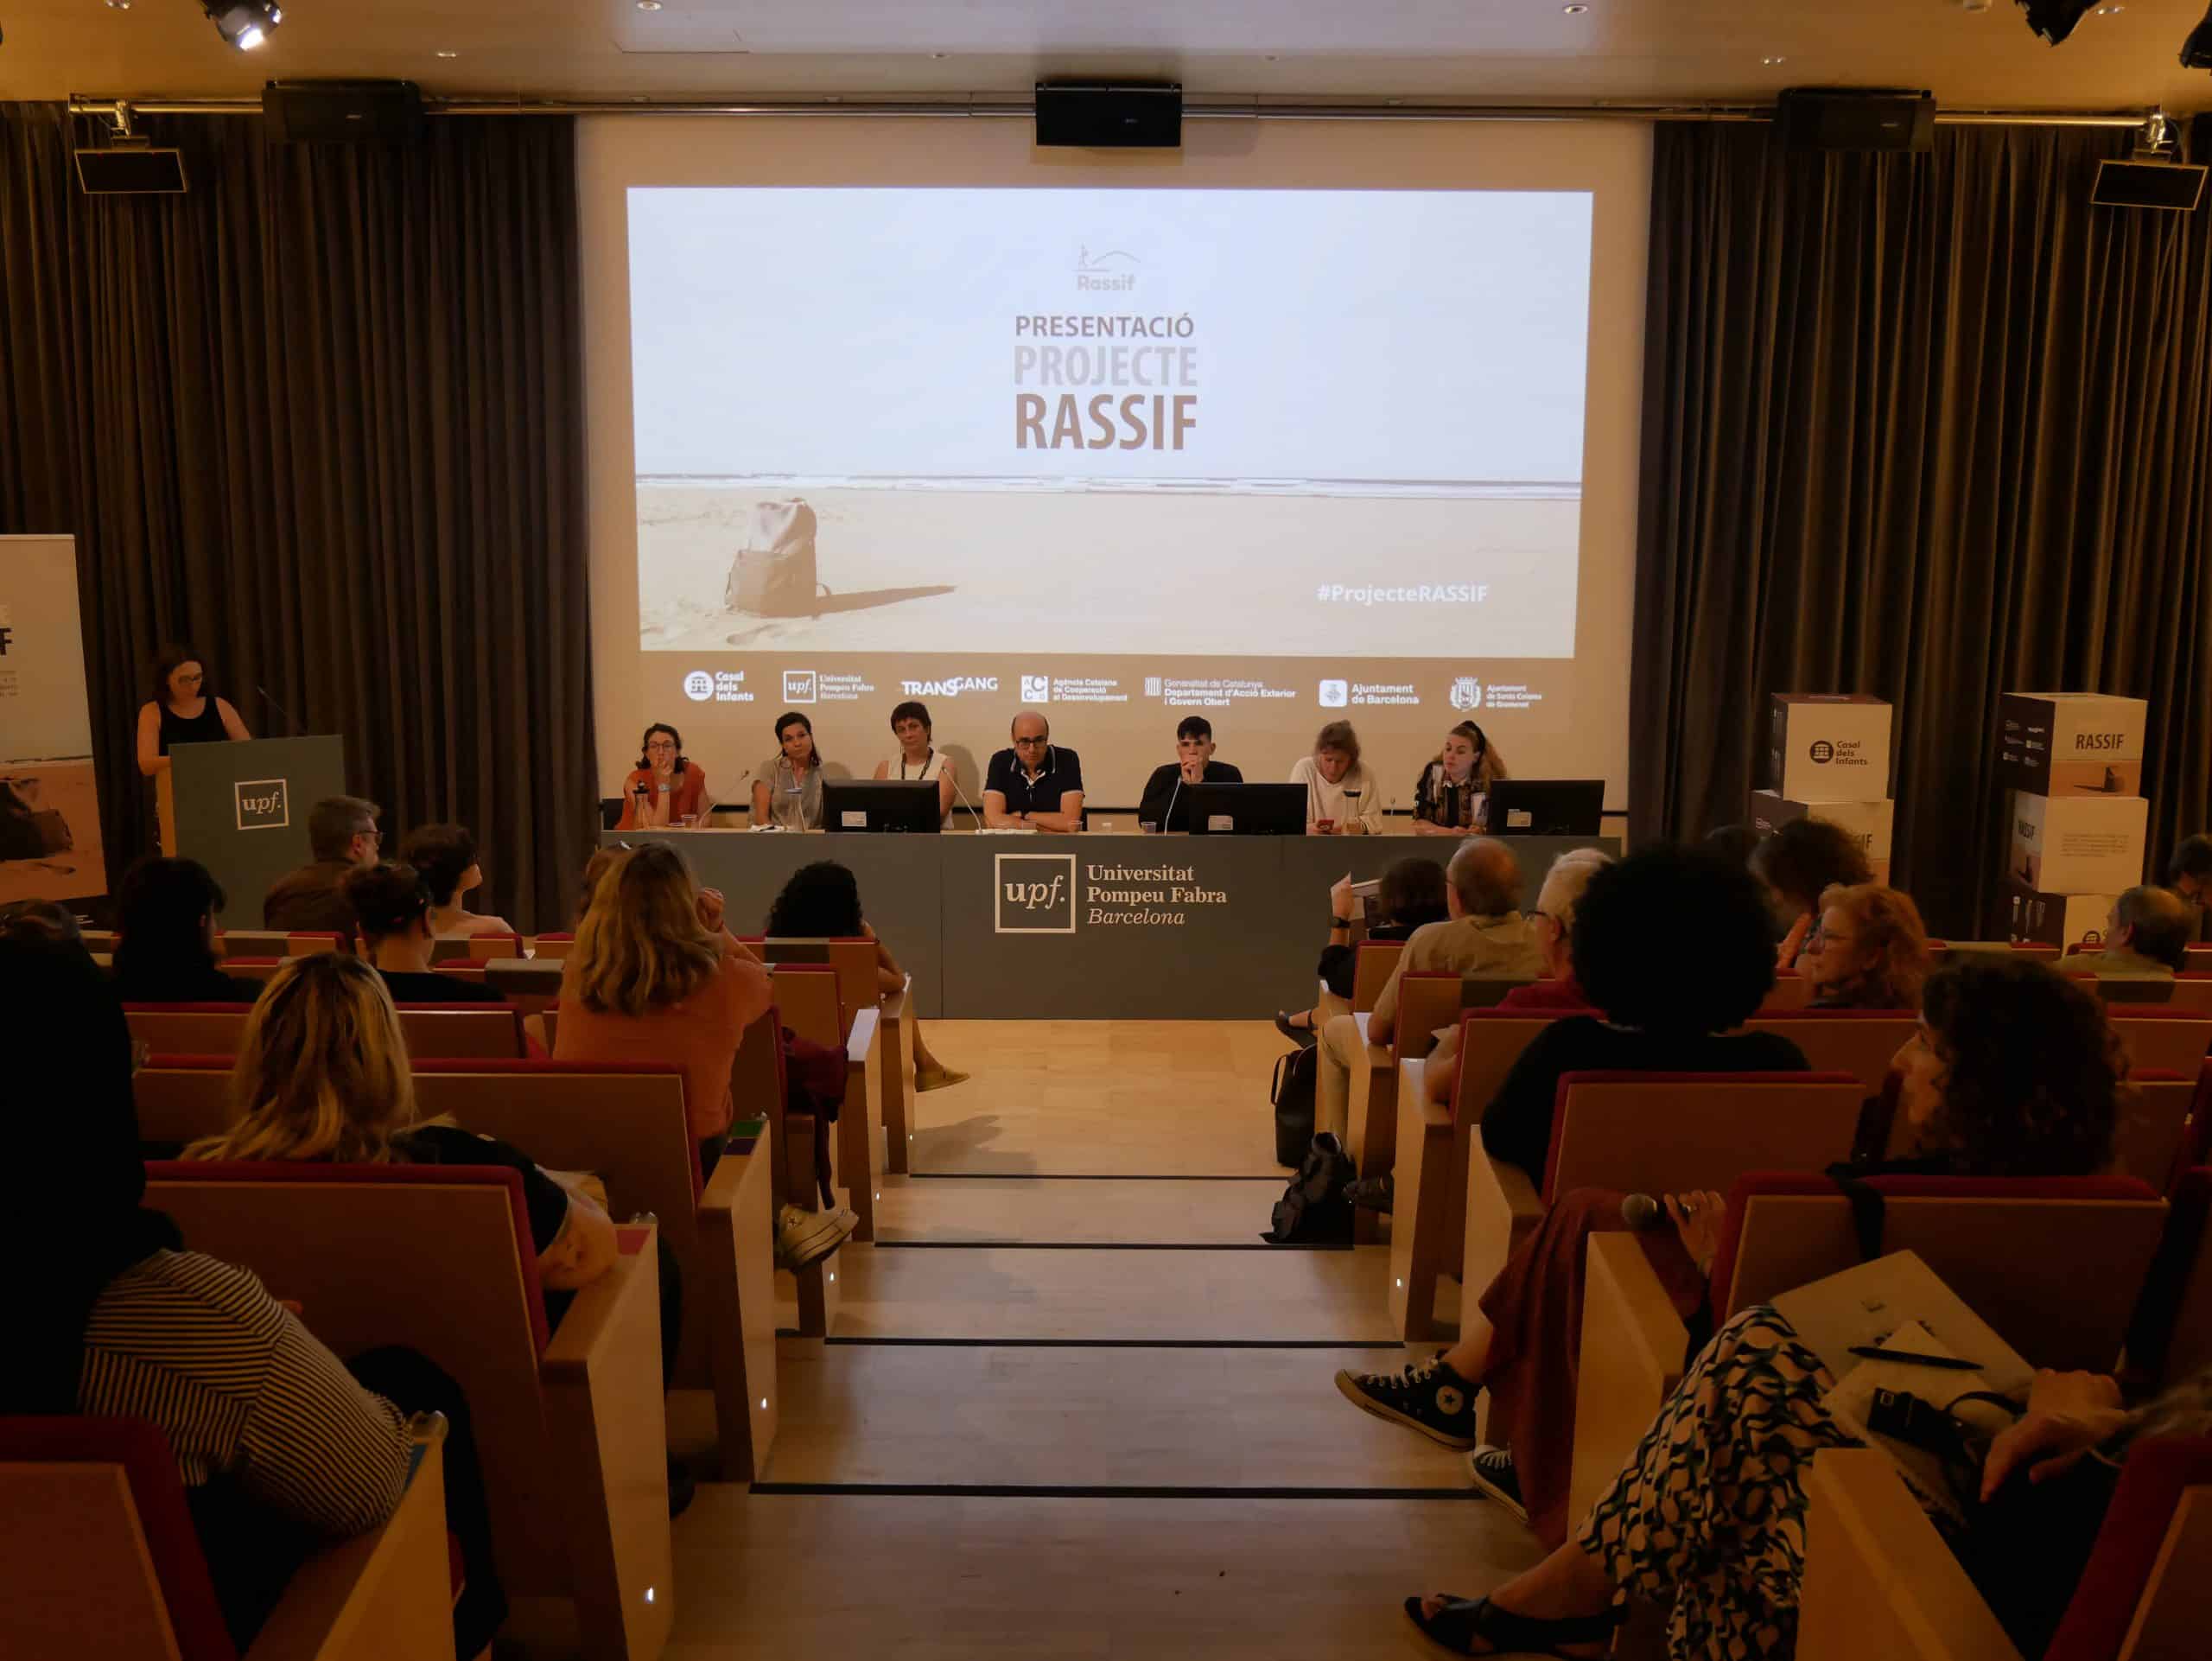 Presentació del projecte Rassif